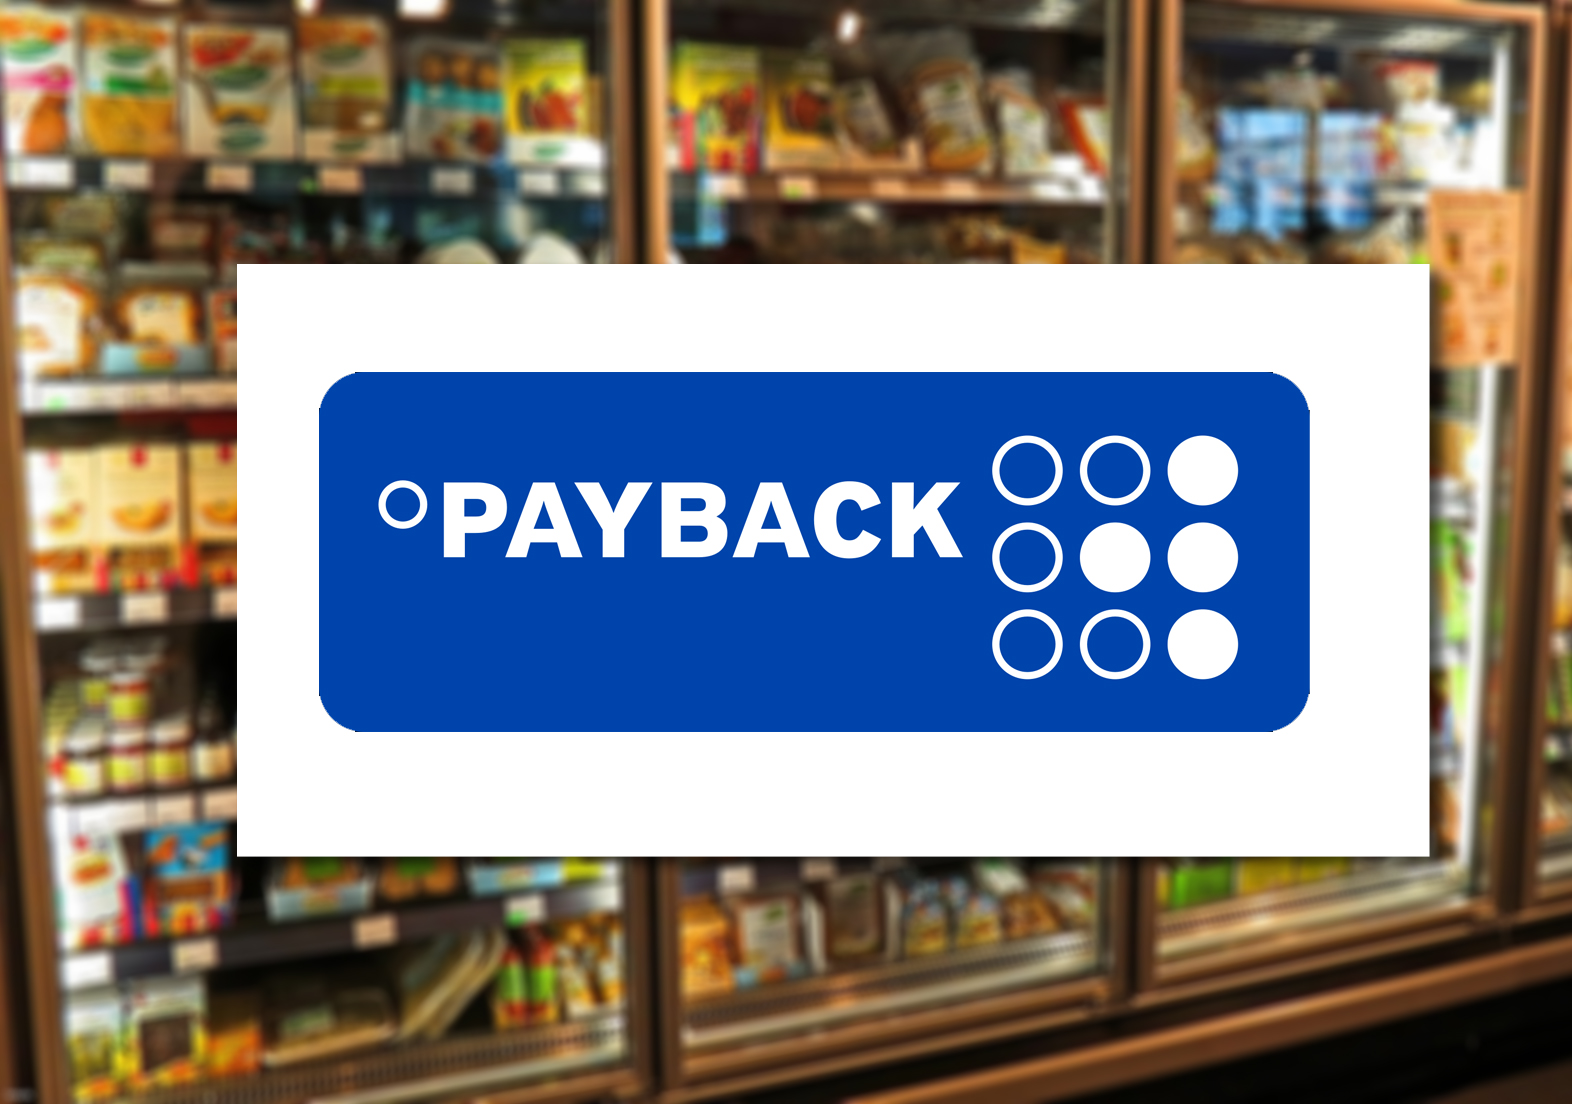 Payback Superlos - Code eingeben, Chance auf Preise sichern beim Gewinnspiel